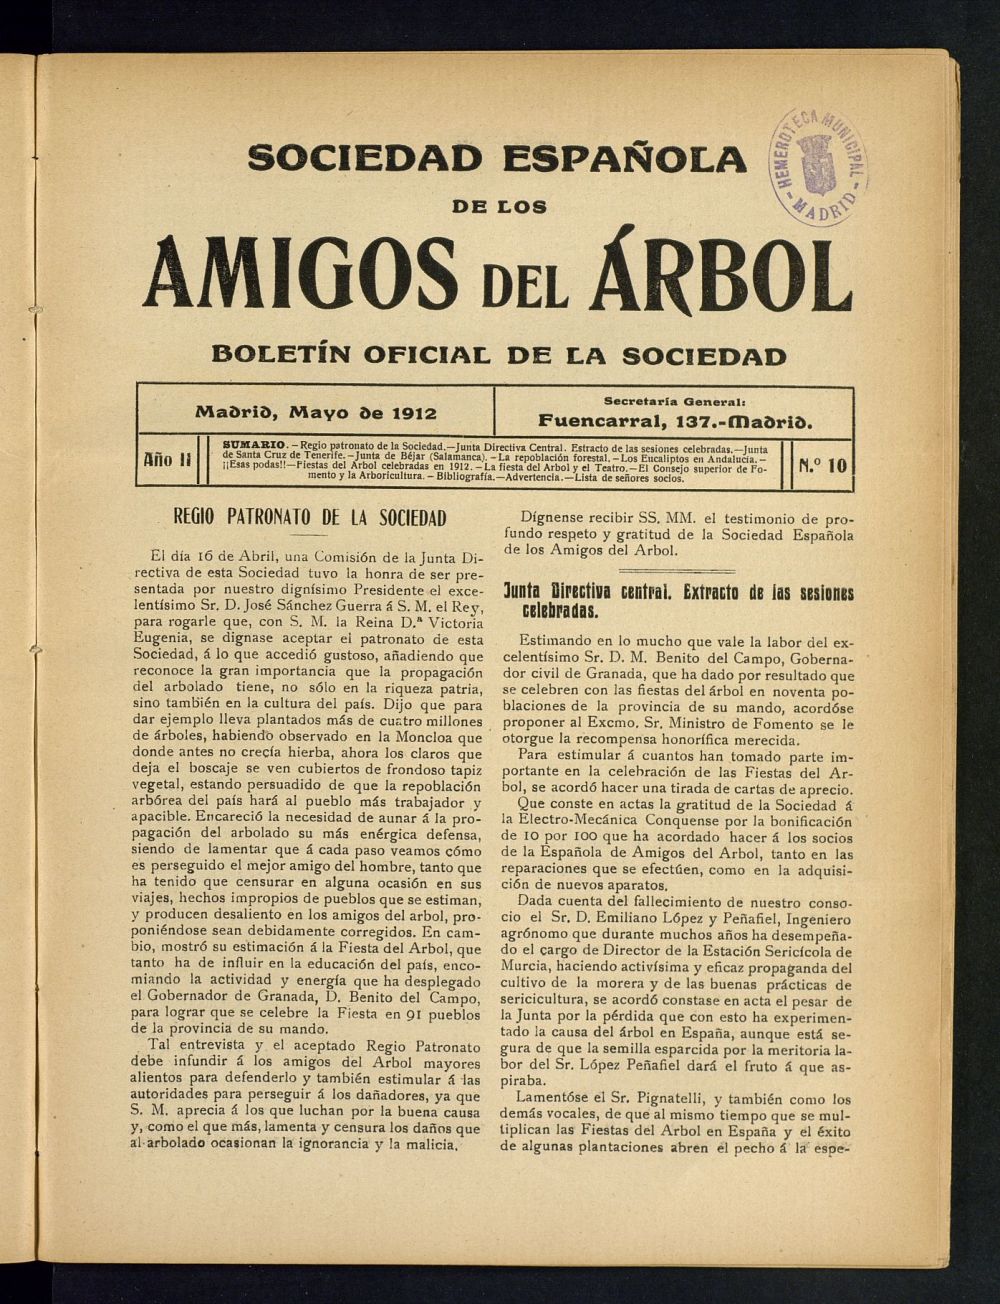 Boletn Comisin organizadora de la Sociedad Espaola de los amigos del rbol de mayo de 1912